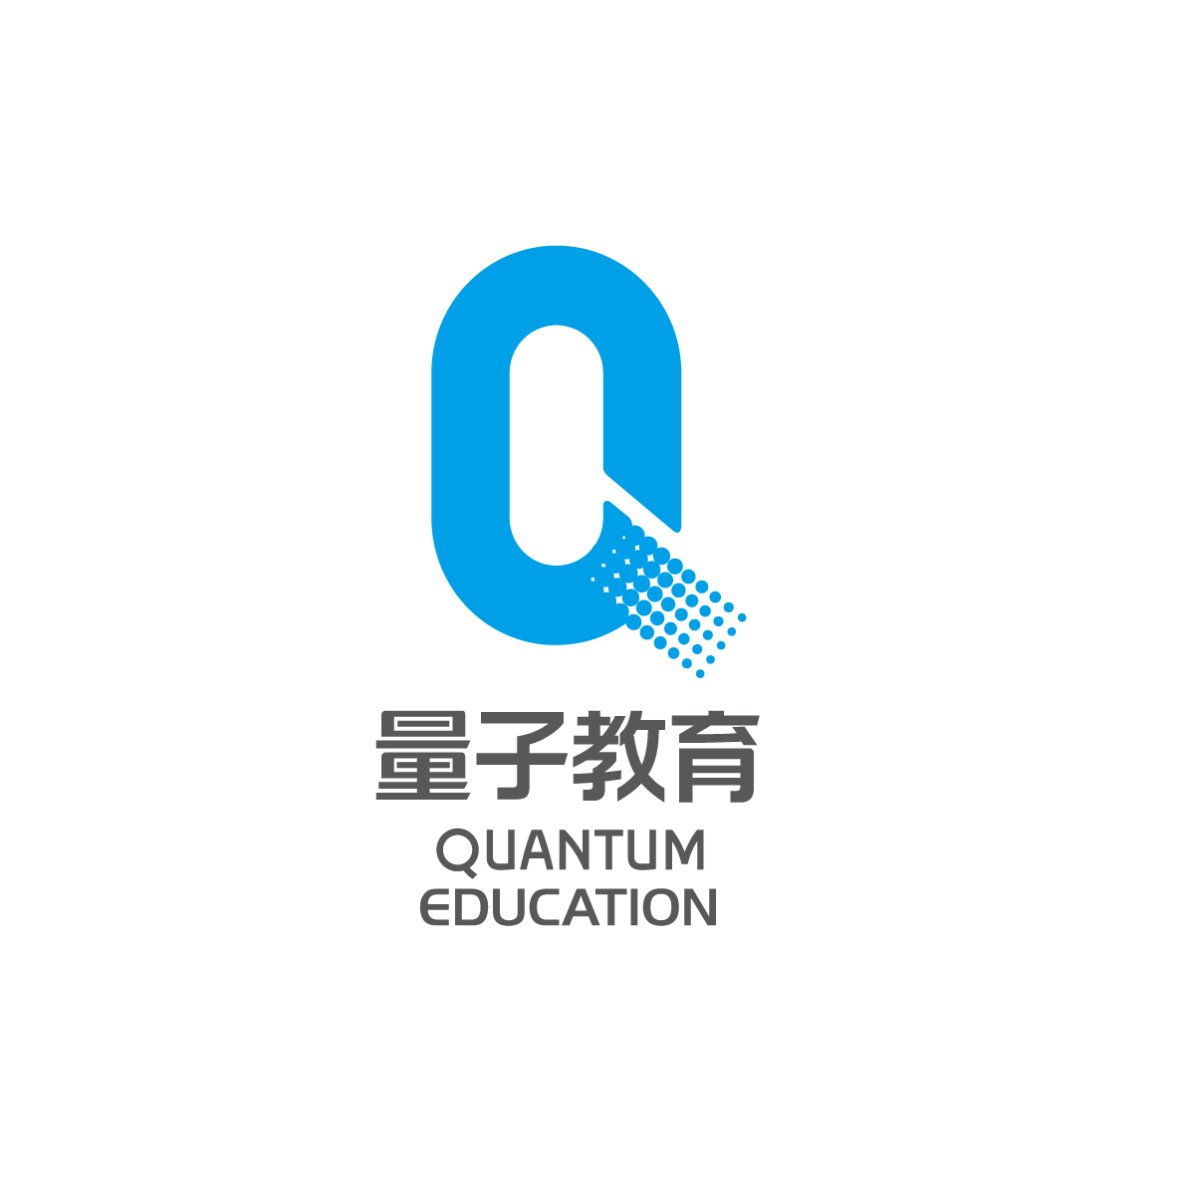 浙江量子教育科技股份有限公司